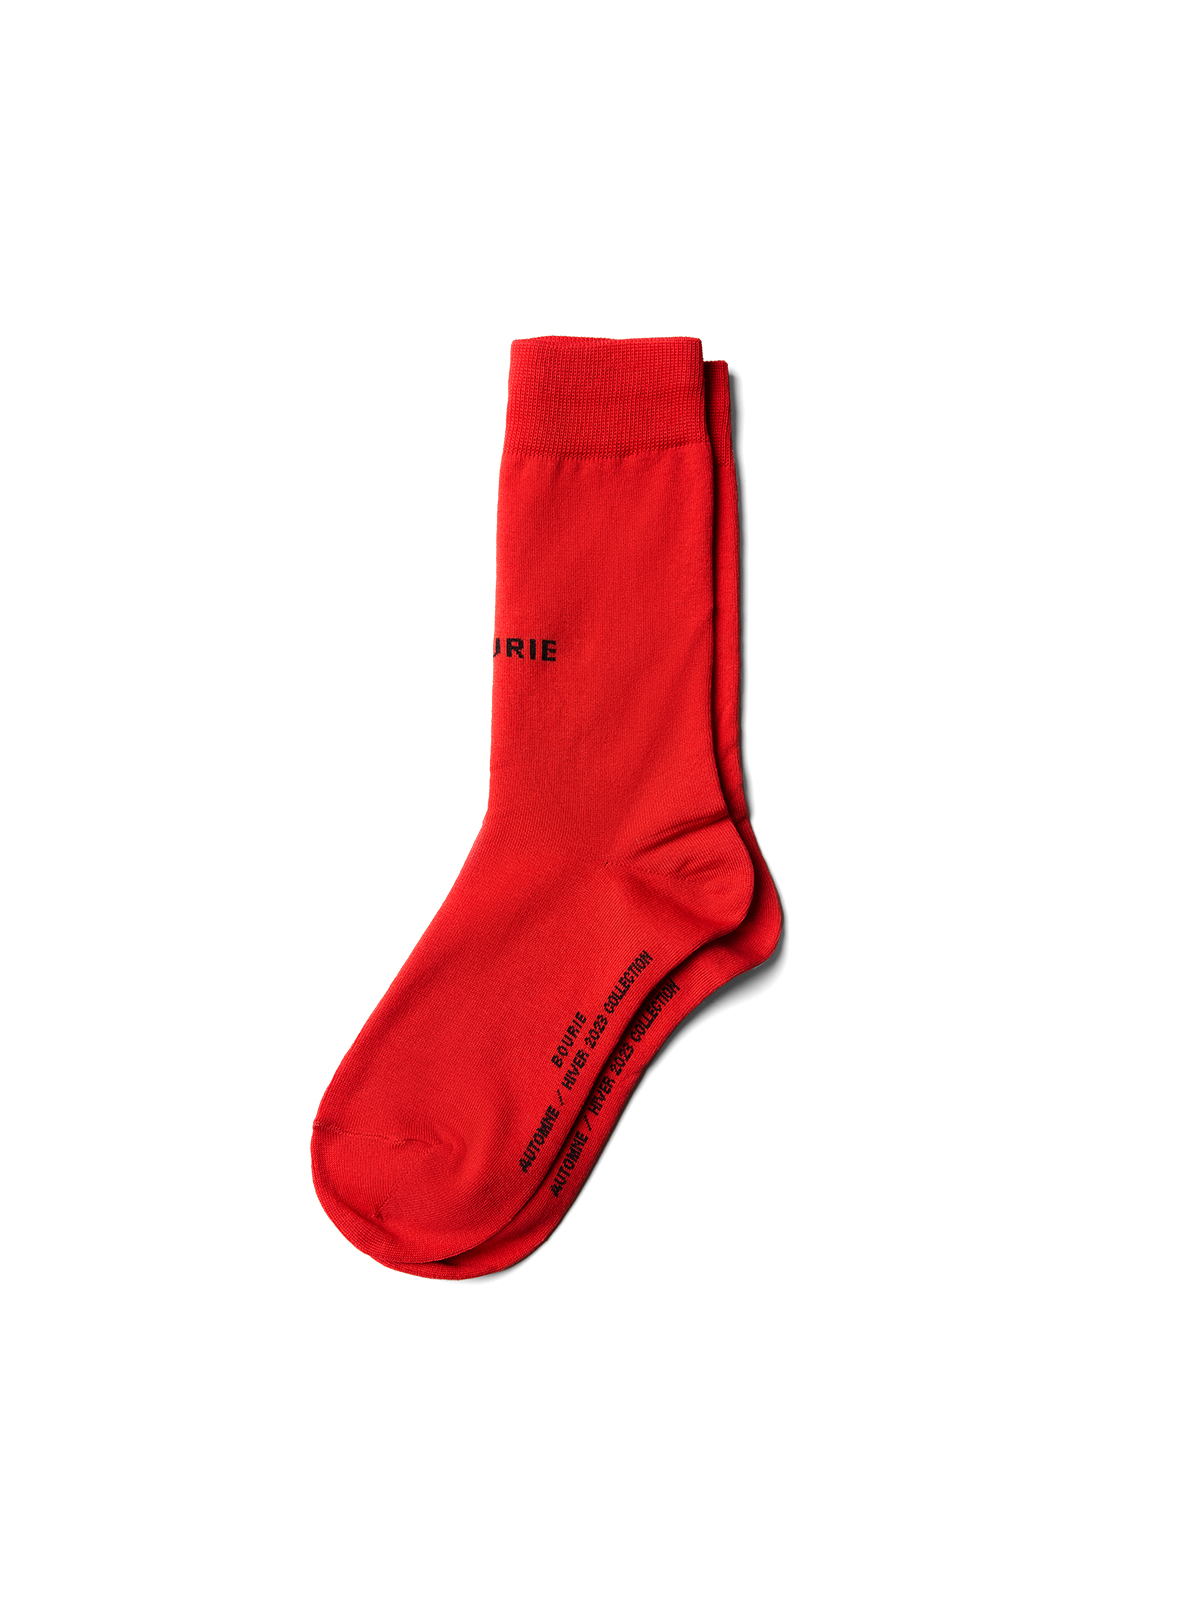 BOURIE BASIC SOCKS (RED)